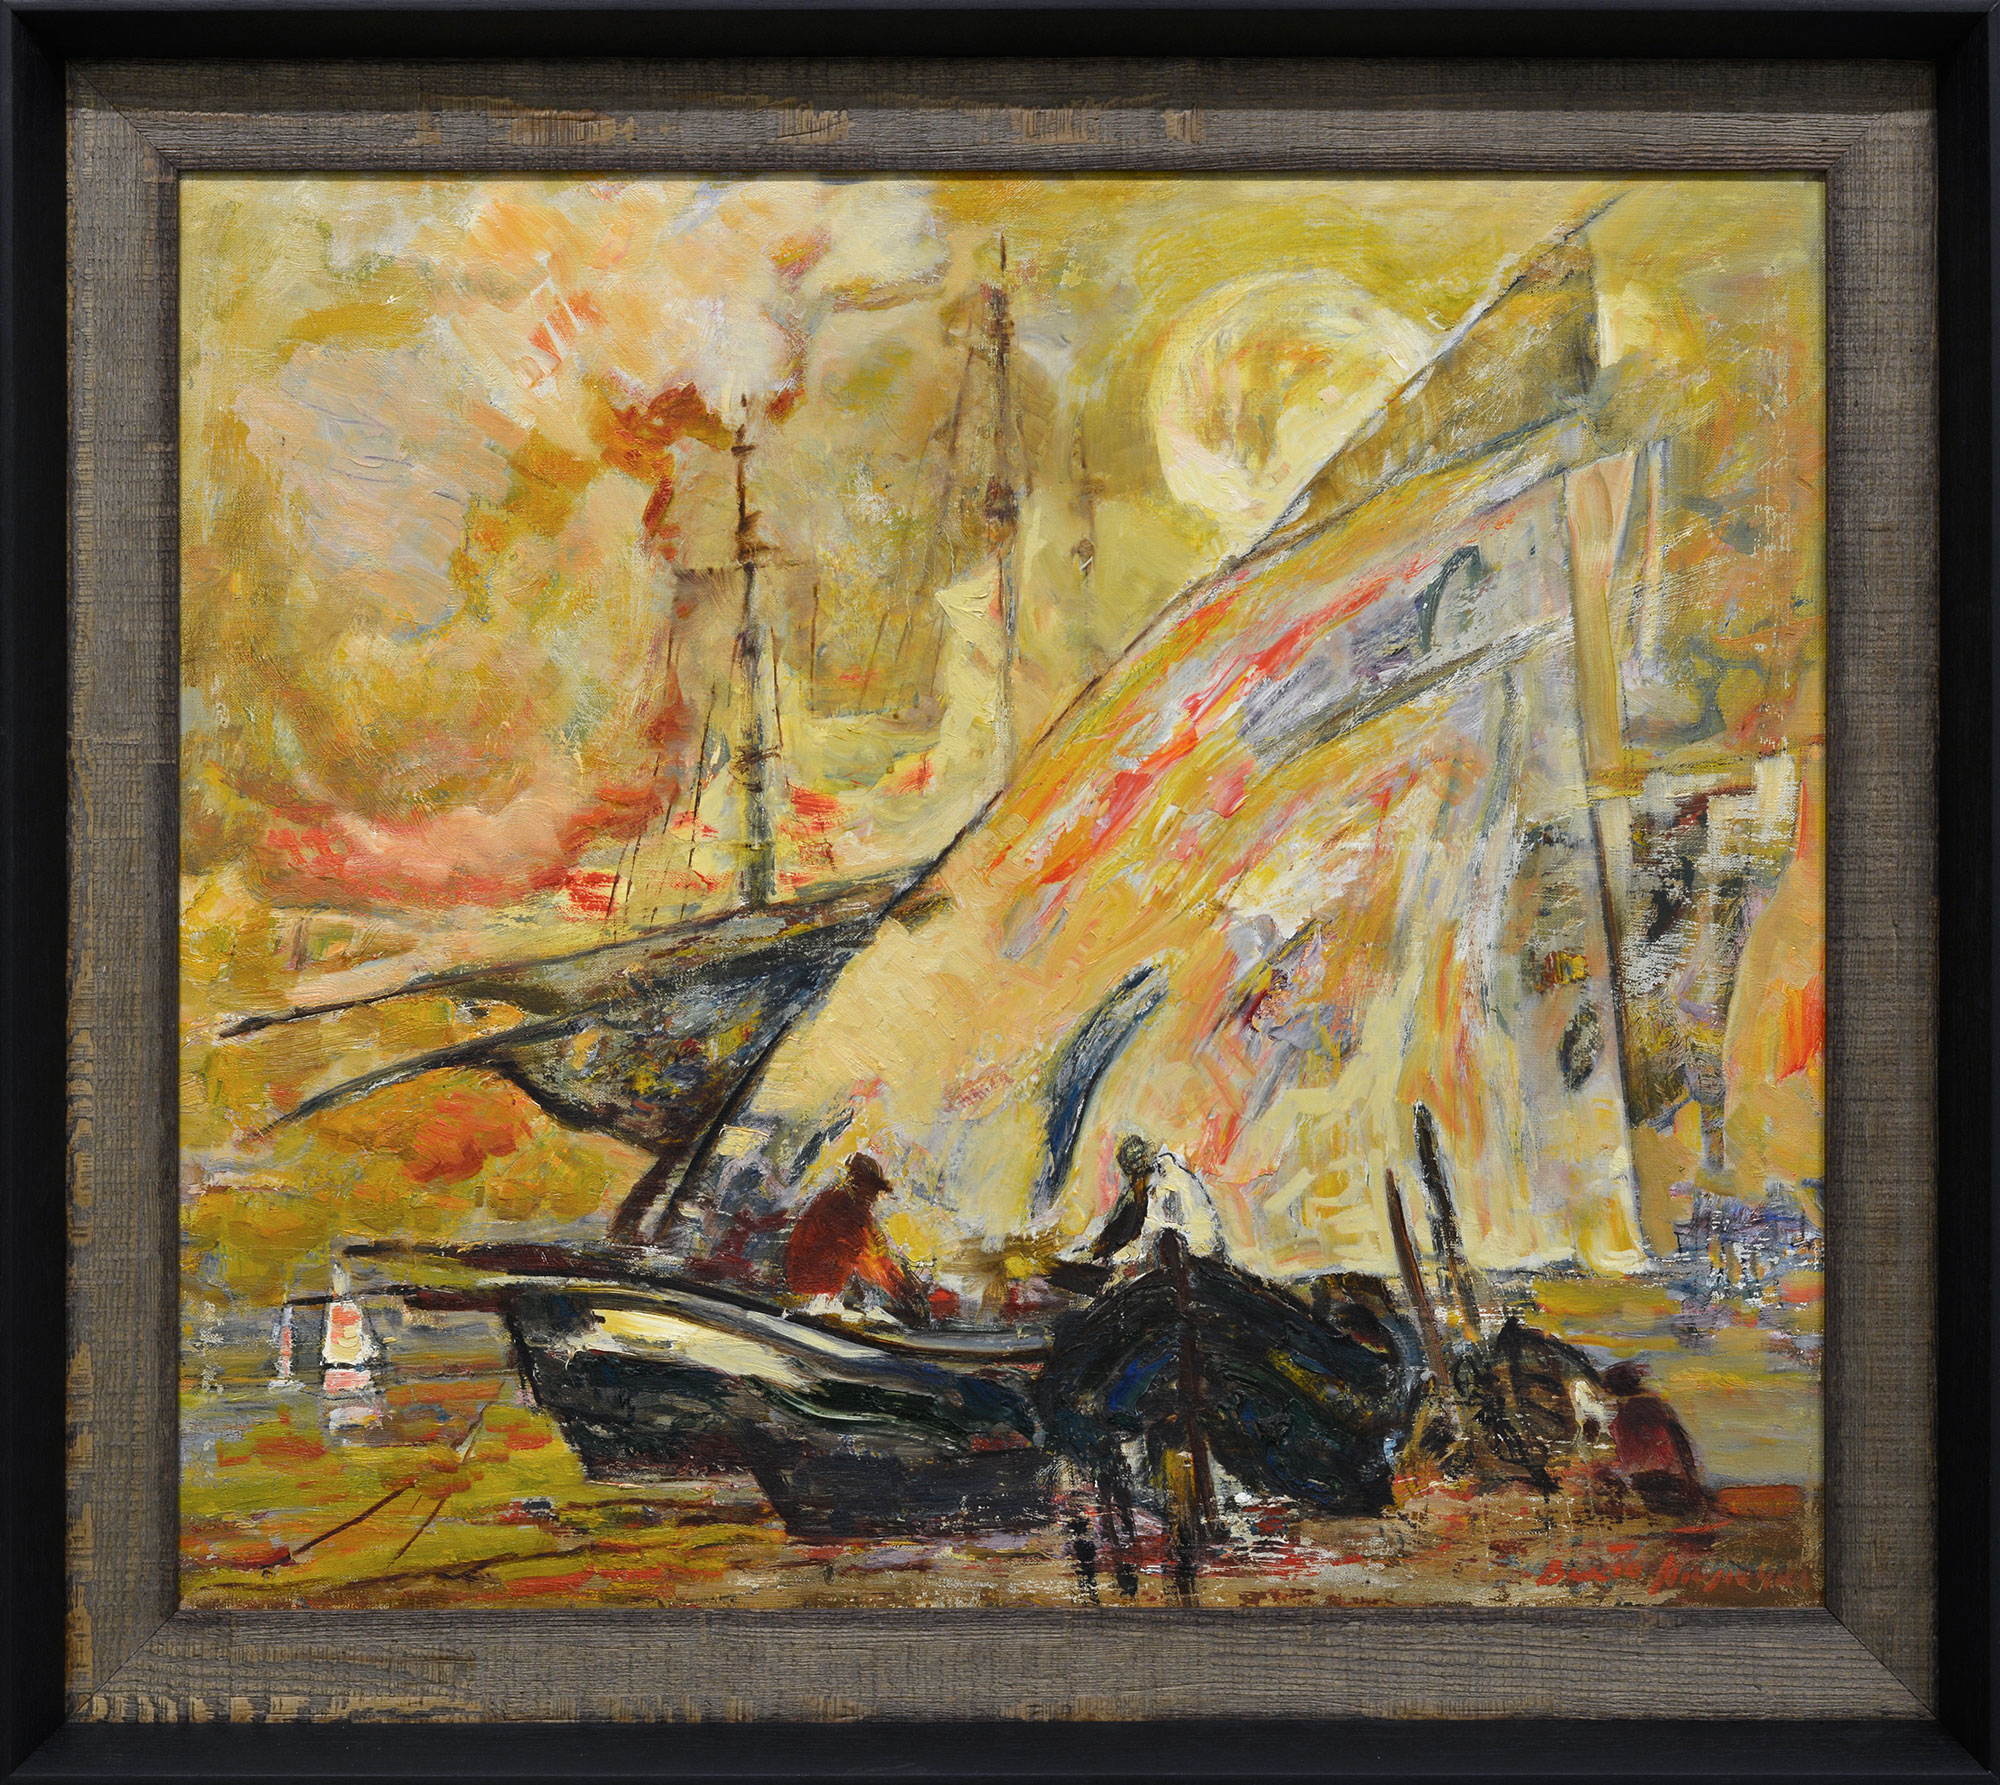 "Sailboats", 1998 - 2